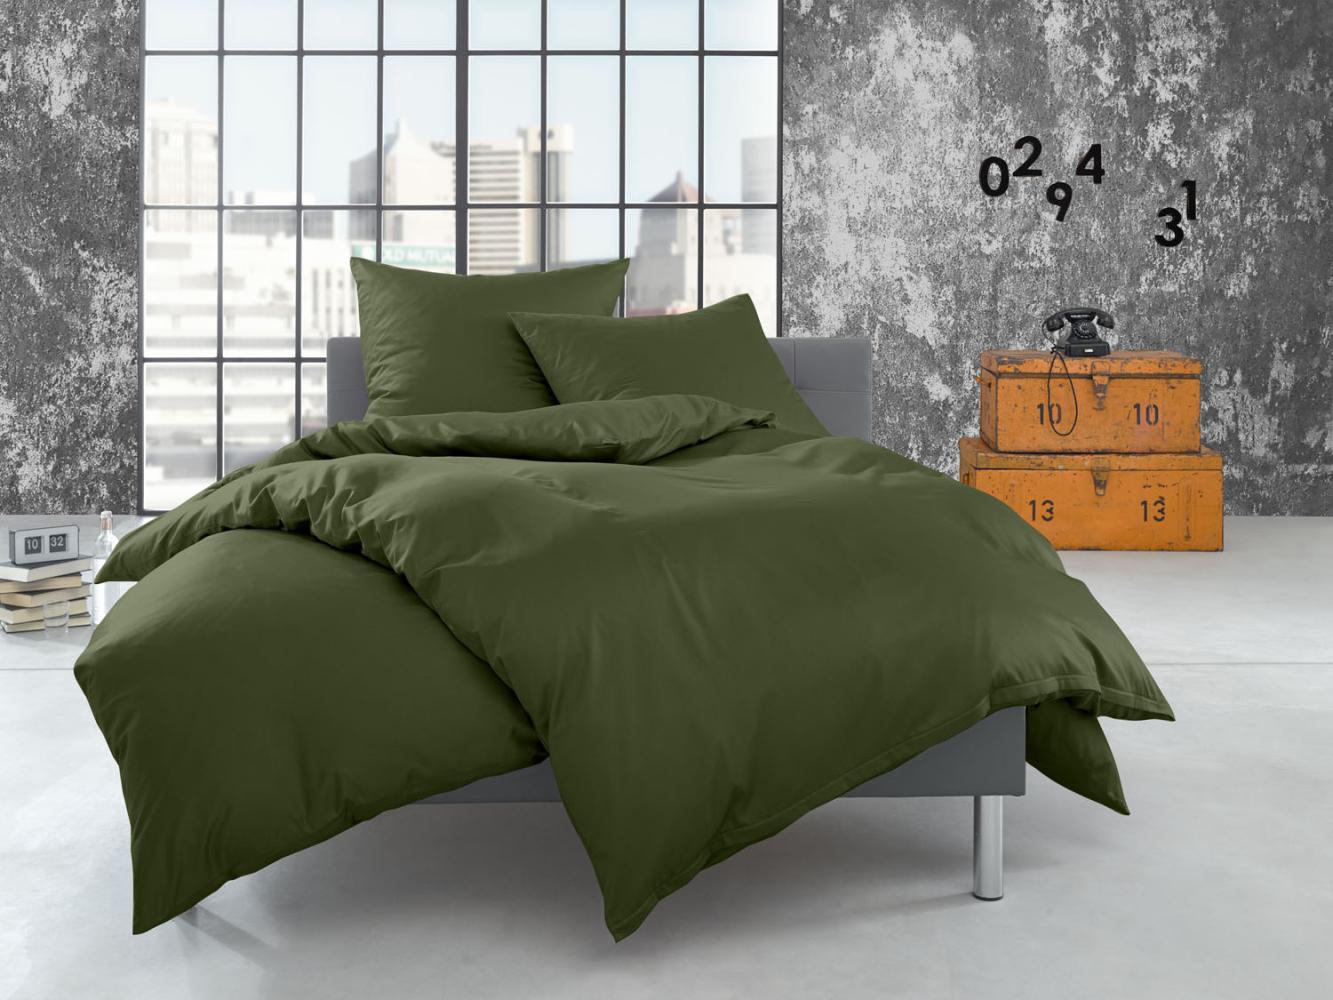 Bettwaesche-mit-Stil Flanell Bettwäsche uni / einfarbig dunkelgrün (oliv) Kissenbezug 80x80 cm Bild 1